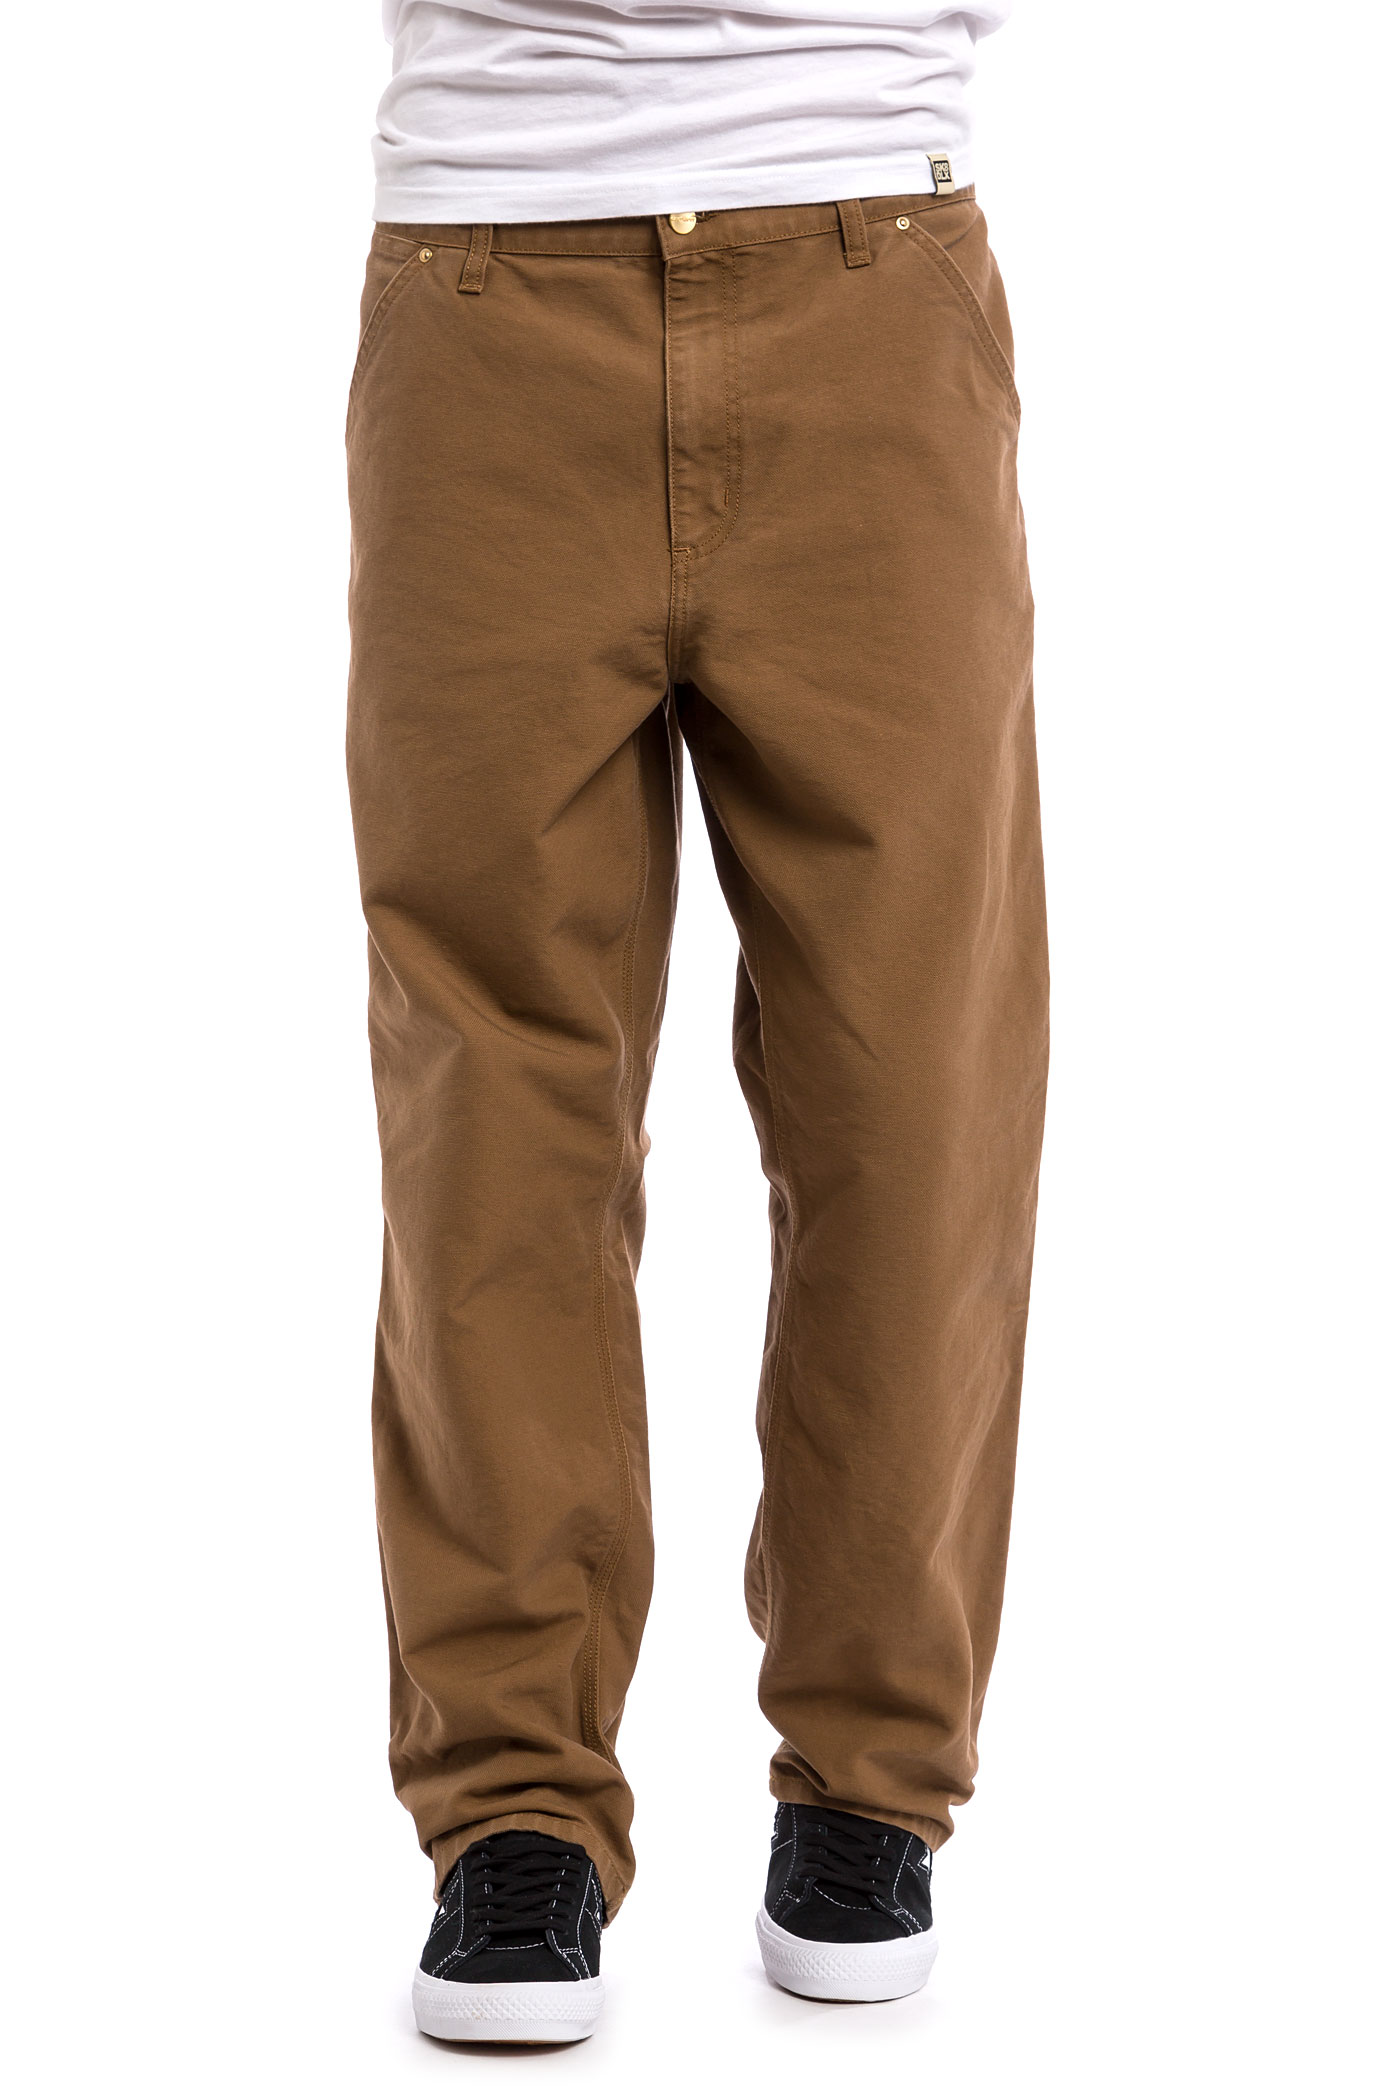 Carhartt WIP Single Knee Pant Turner Pants (hamilton brown rinsed) buy ...